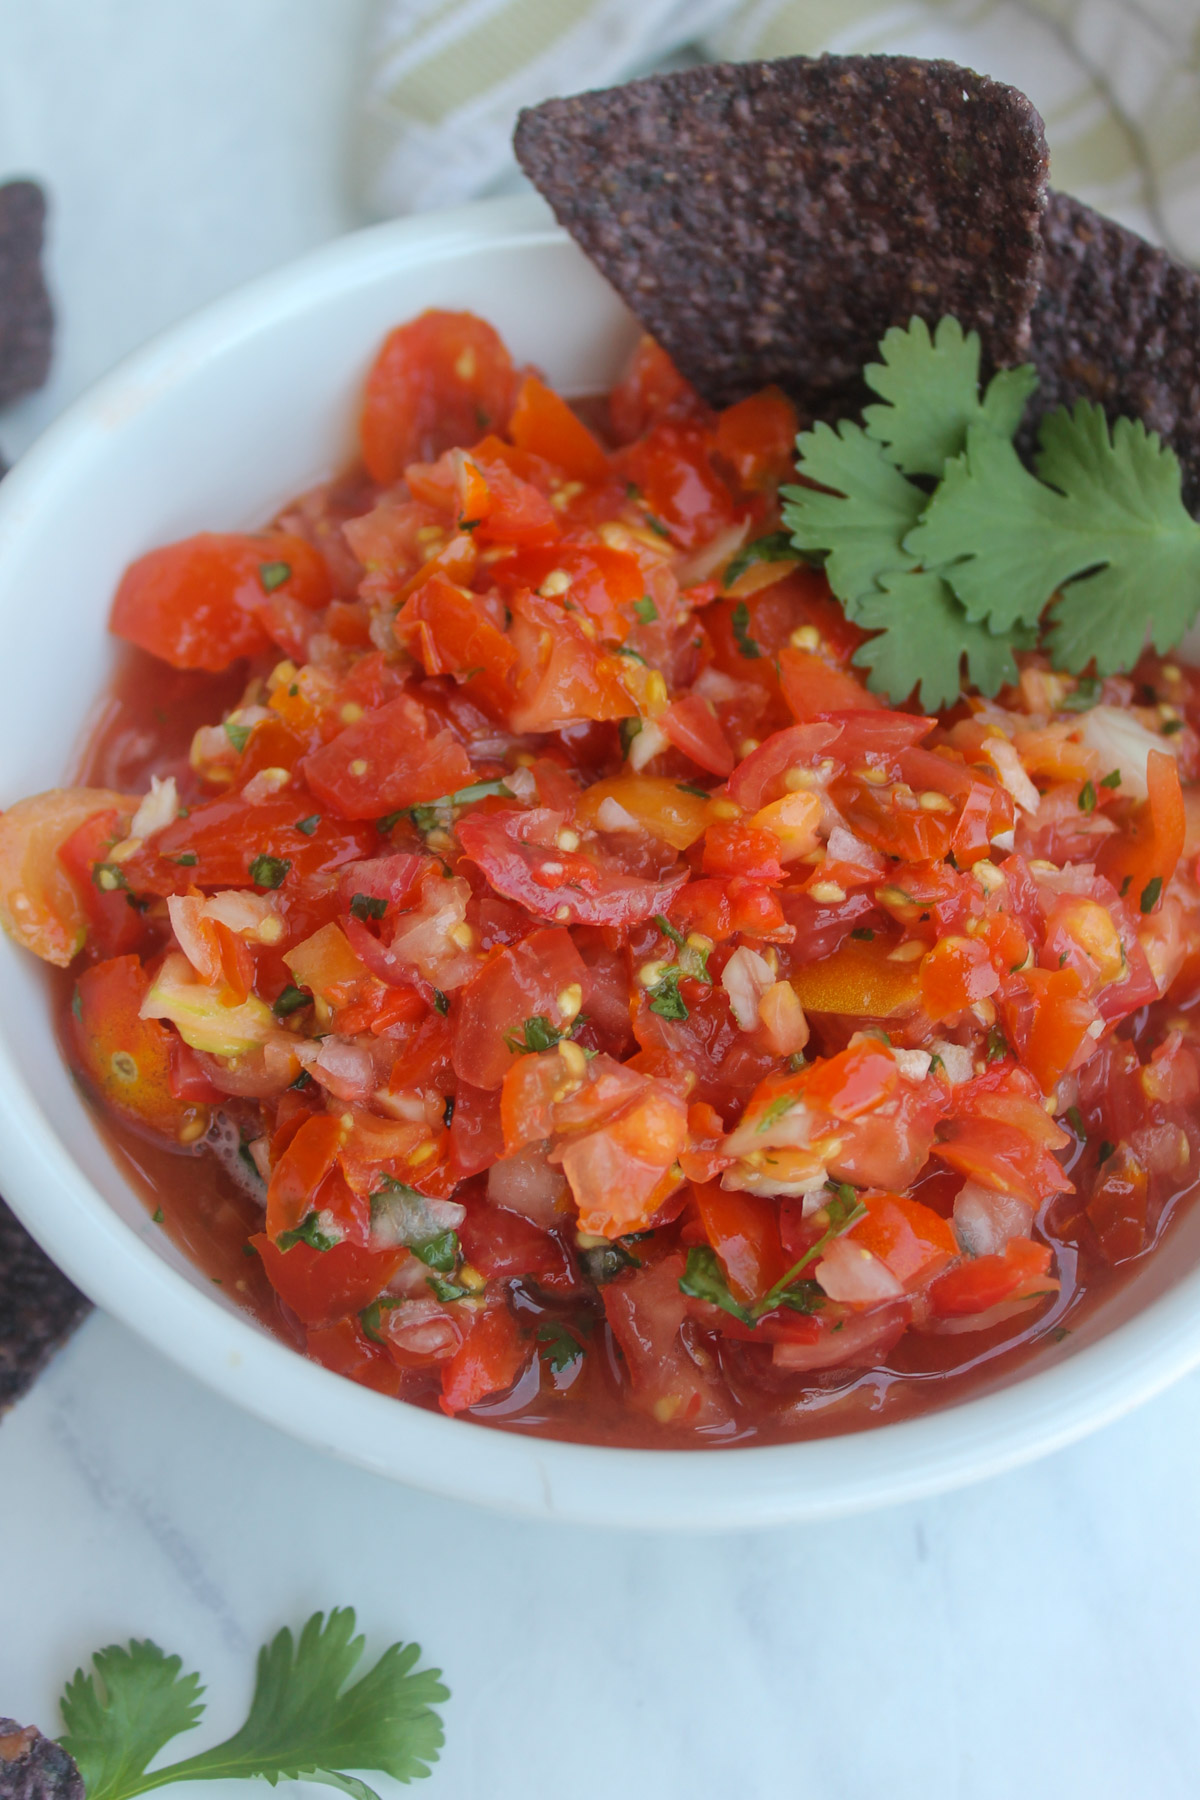 A bowl of cherry tomato pico de gallo with cilantro leaves and blue corn chips.